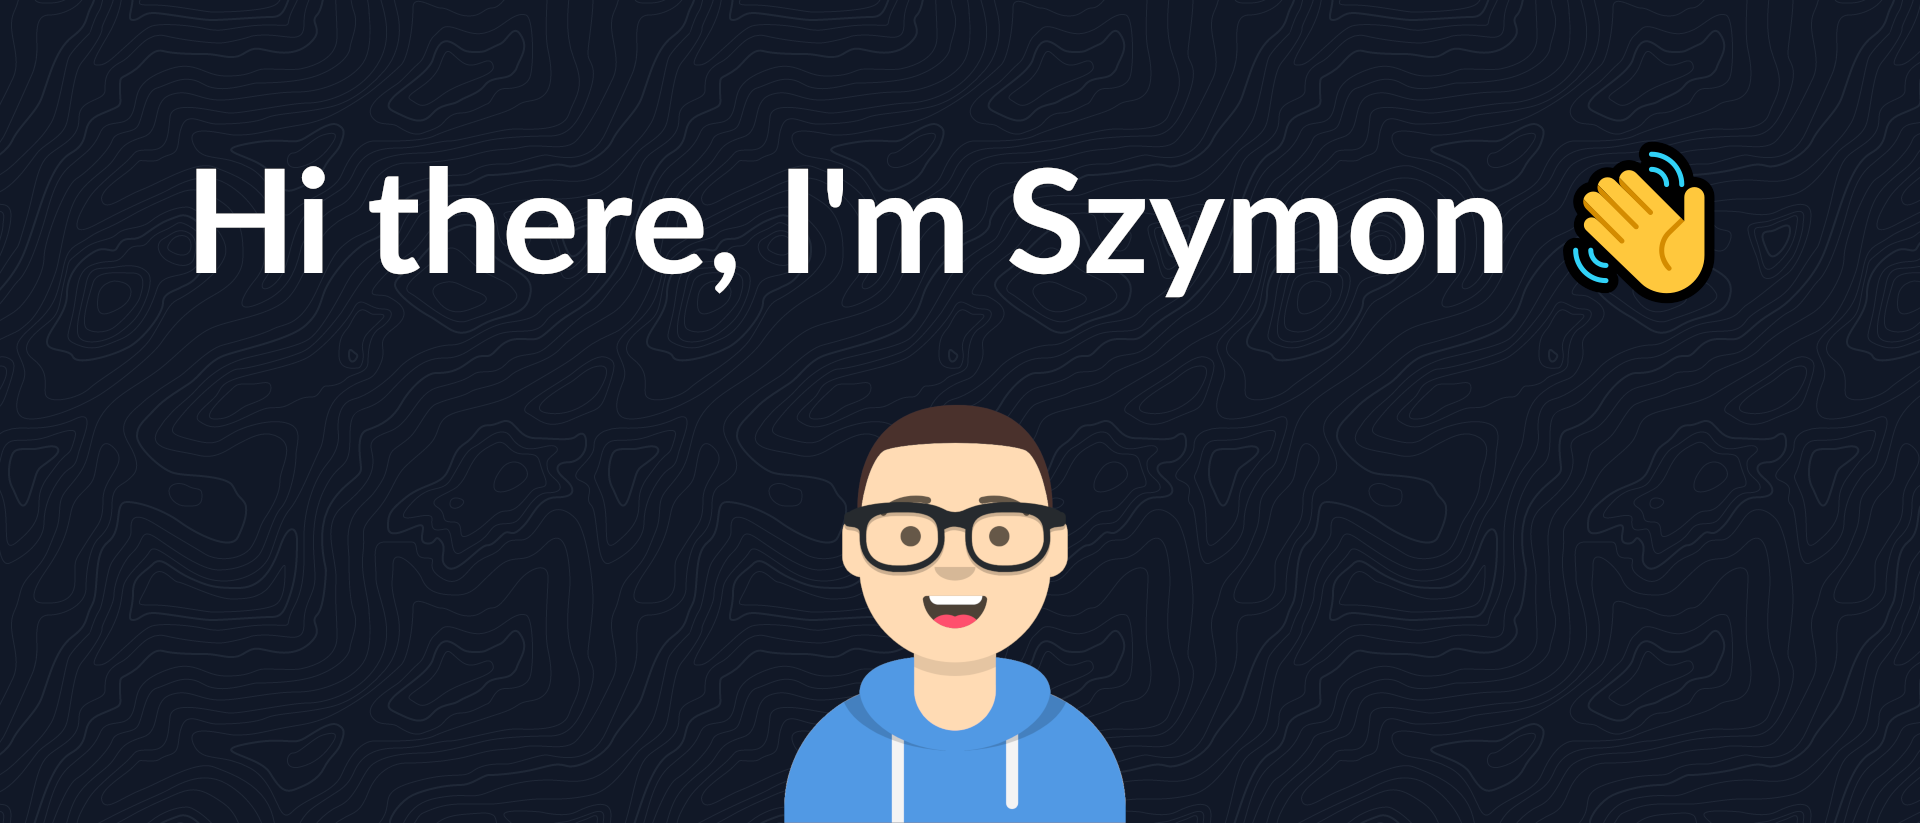 Hi there, I'm Szymon 👋